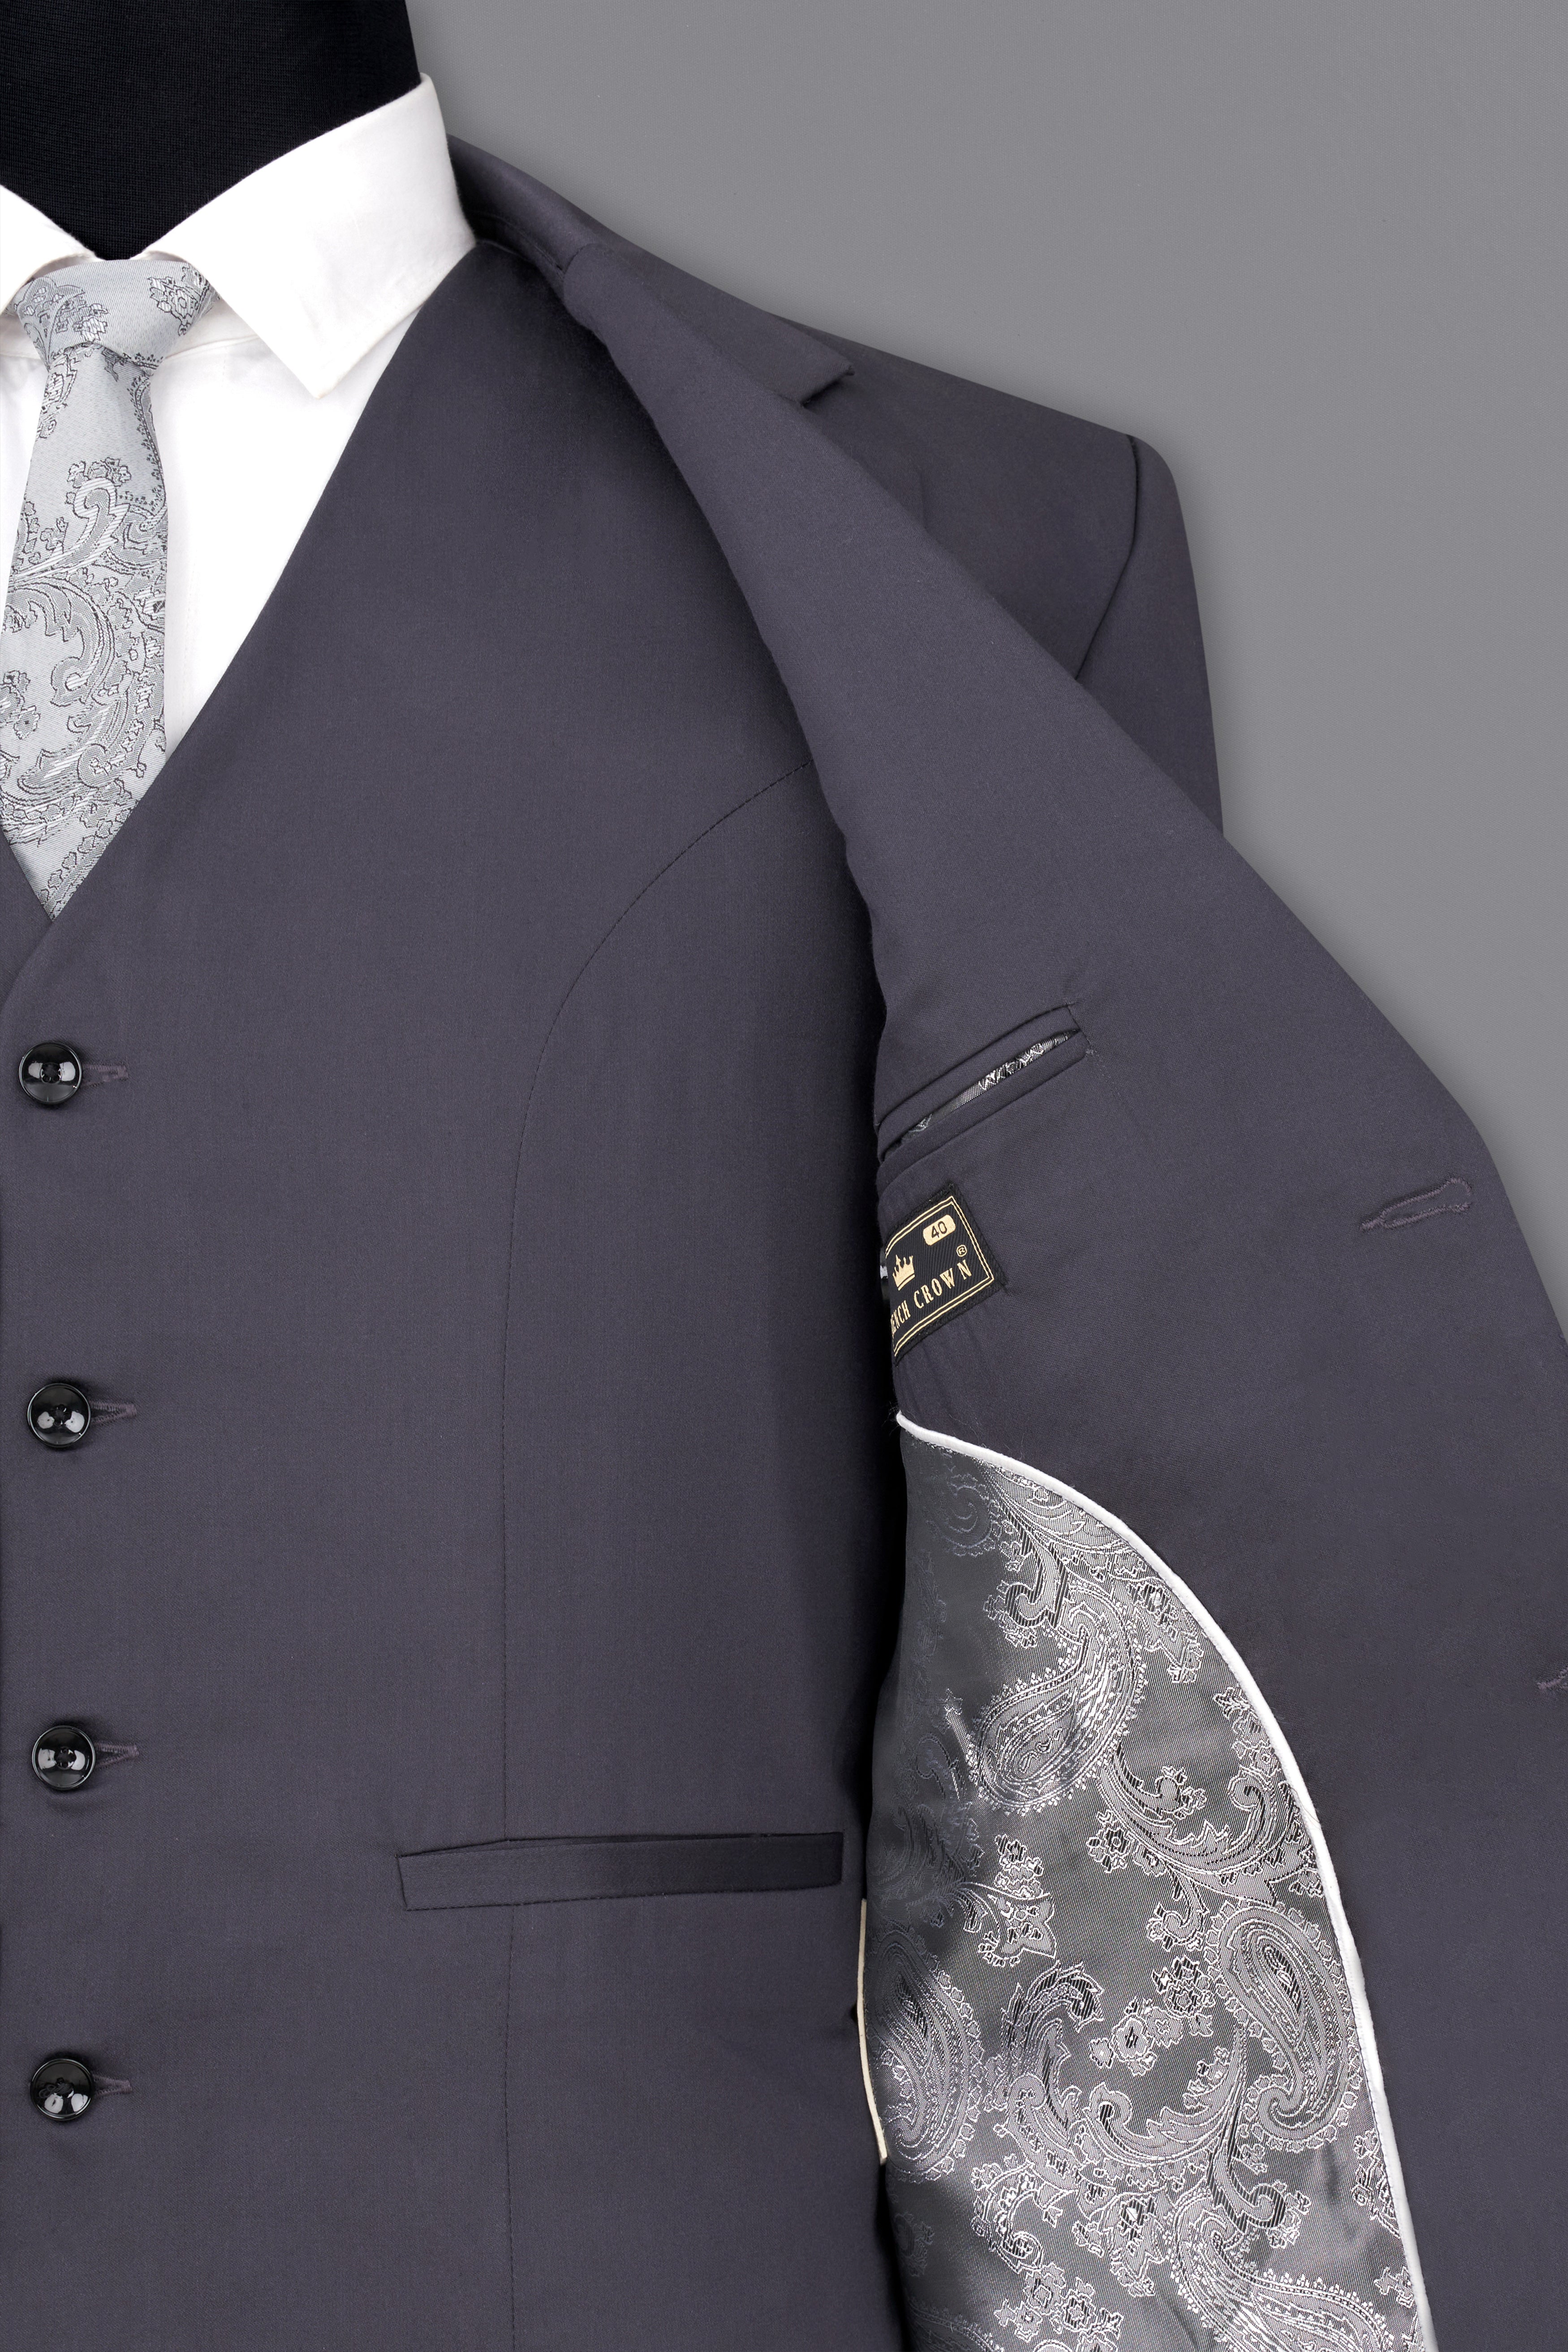 Porpoise Grey Subtle Sheen Wool Suit